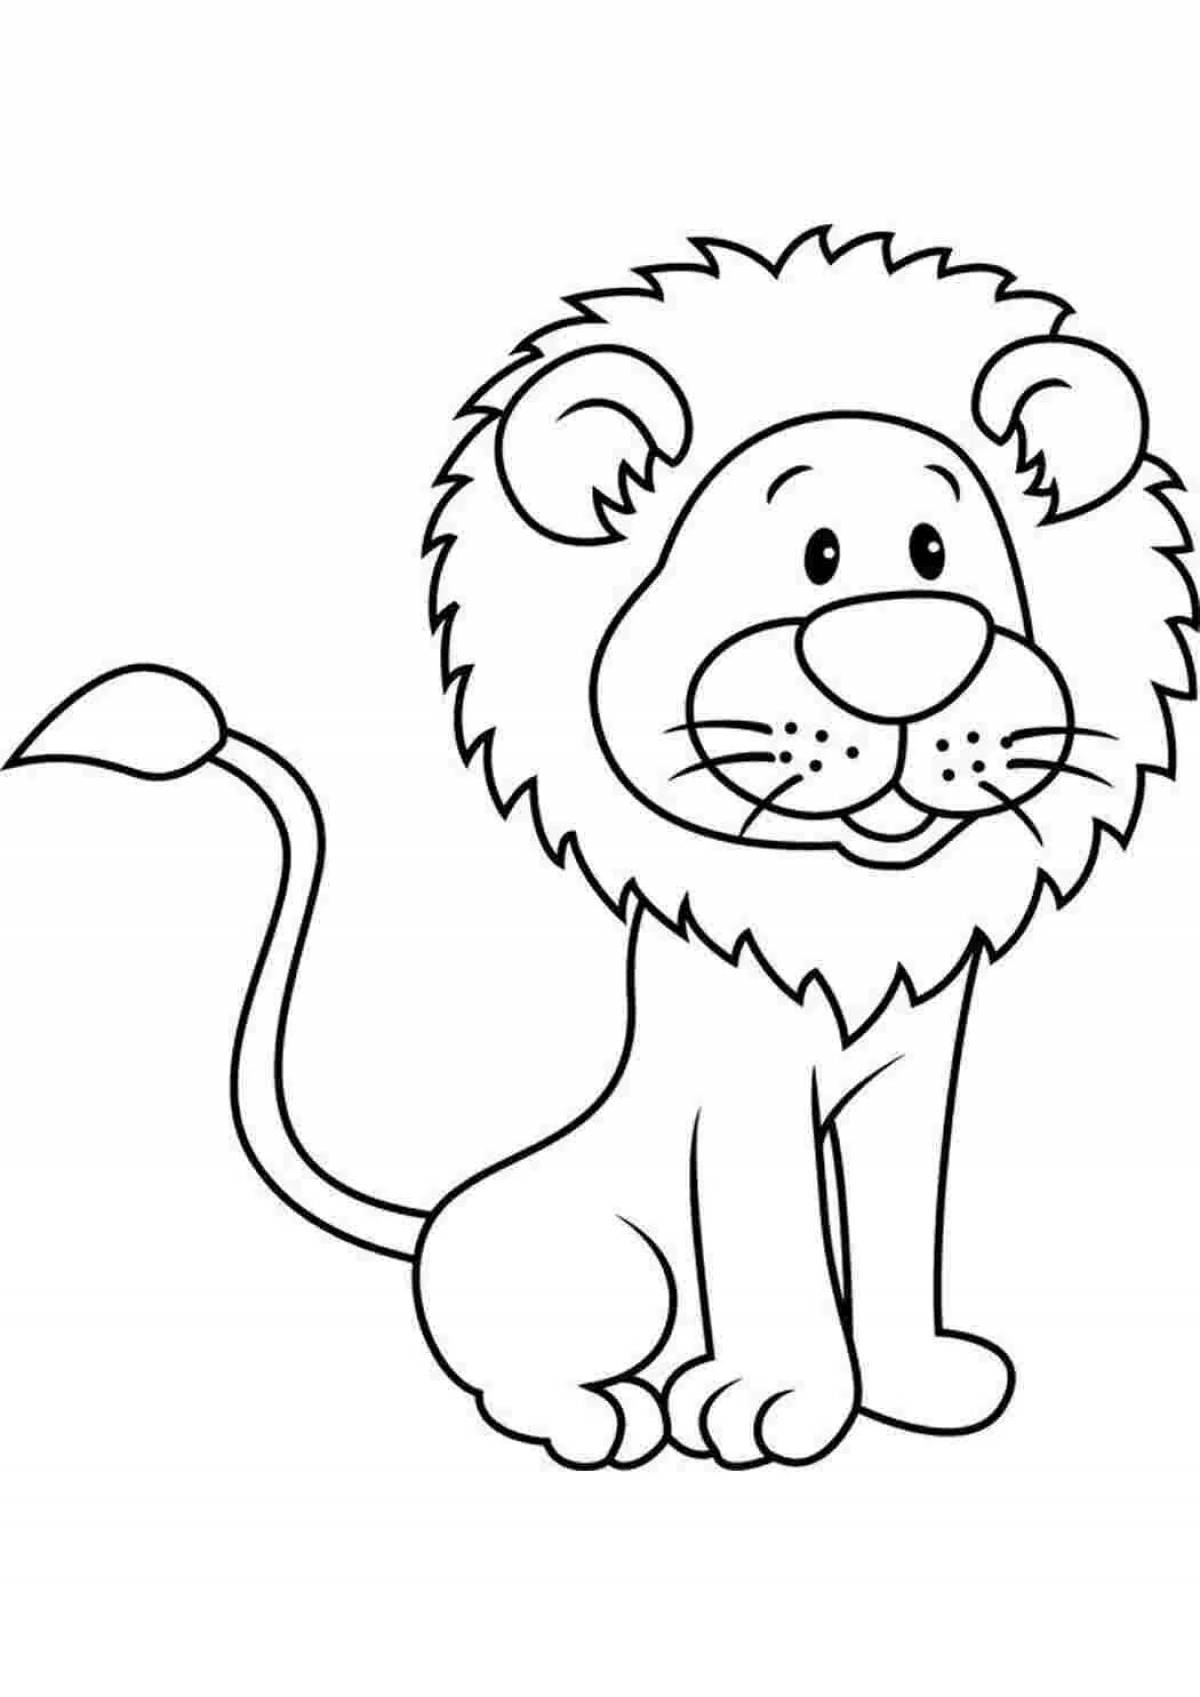 Творческий рисунок льва для детей